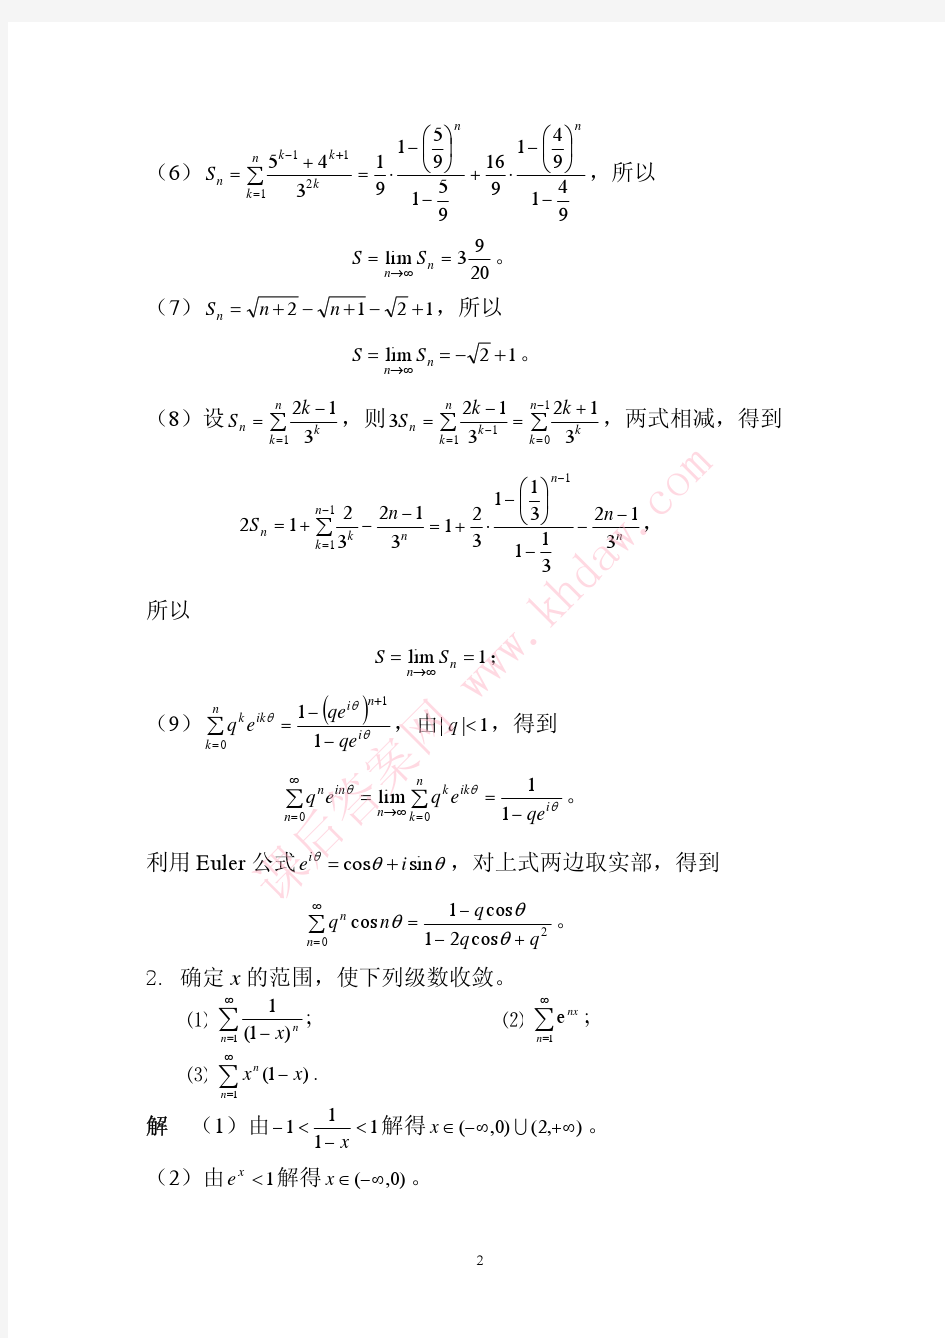 数学分析课后习题答案--高教第二版(陈纪修)--9章